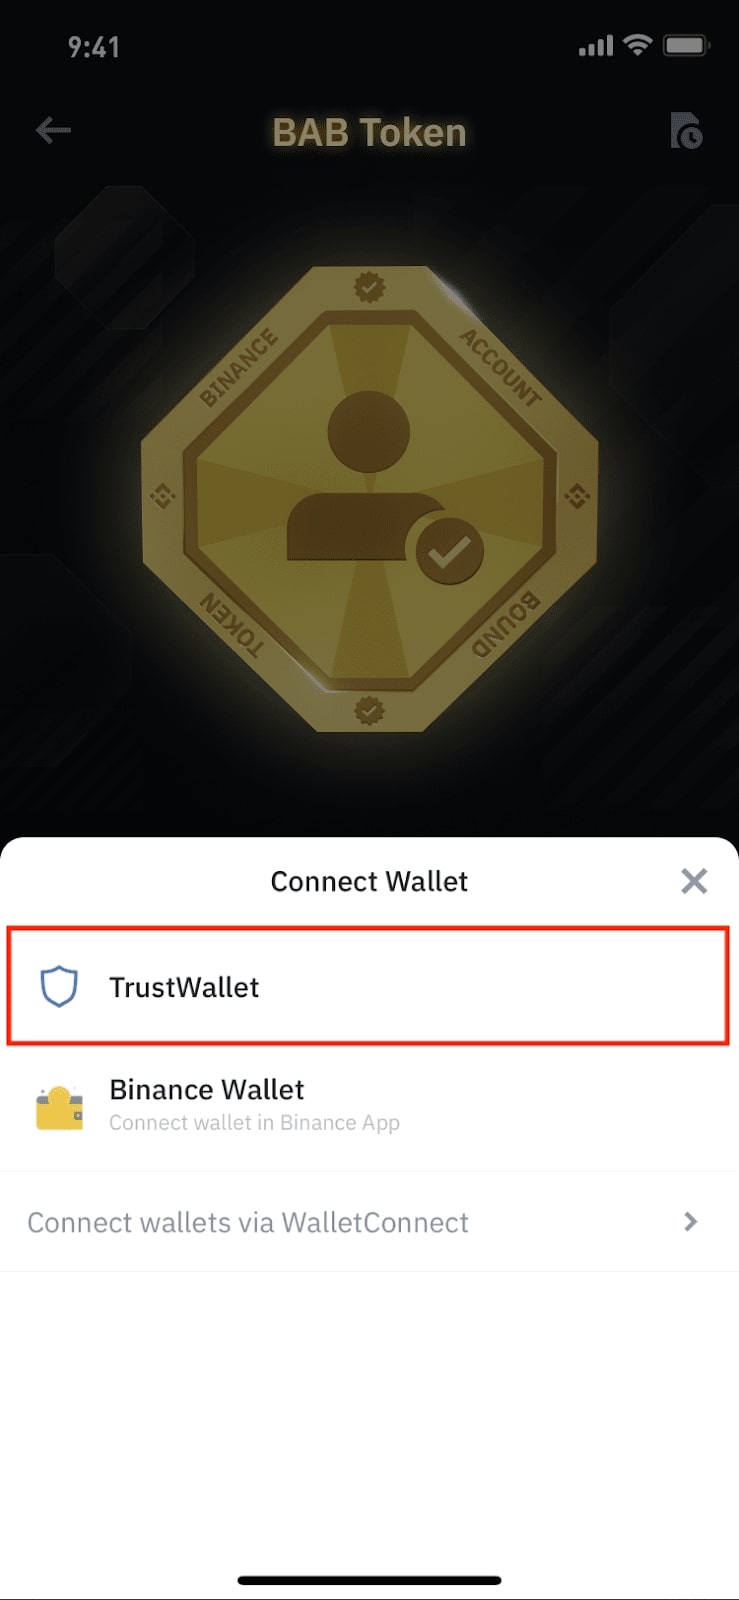 nhấp vào Trust Wallet để kết nối ví